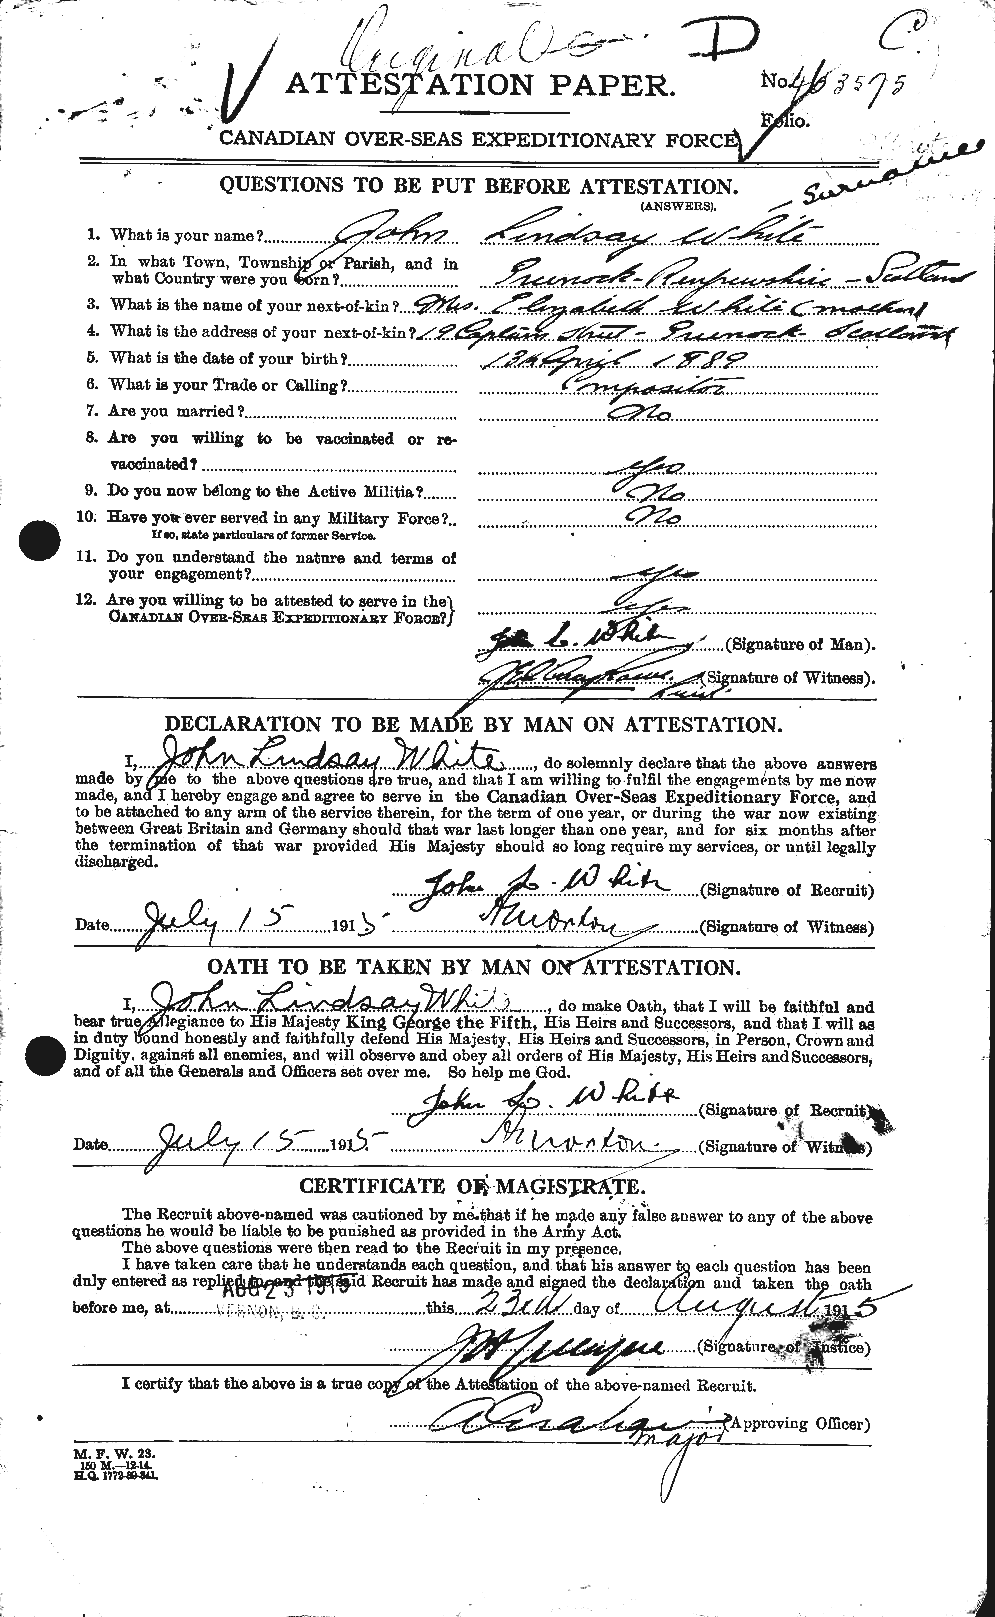 Dossiers du Personnel de la Première Guerre mondiale - CEC 671582a